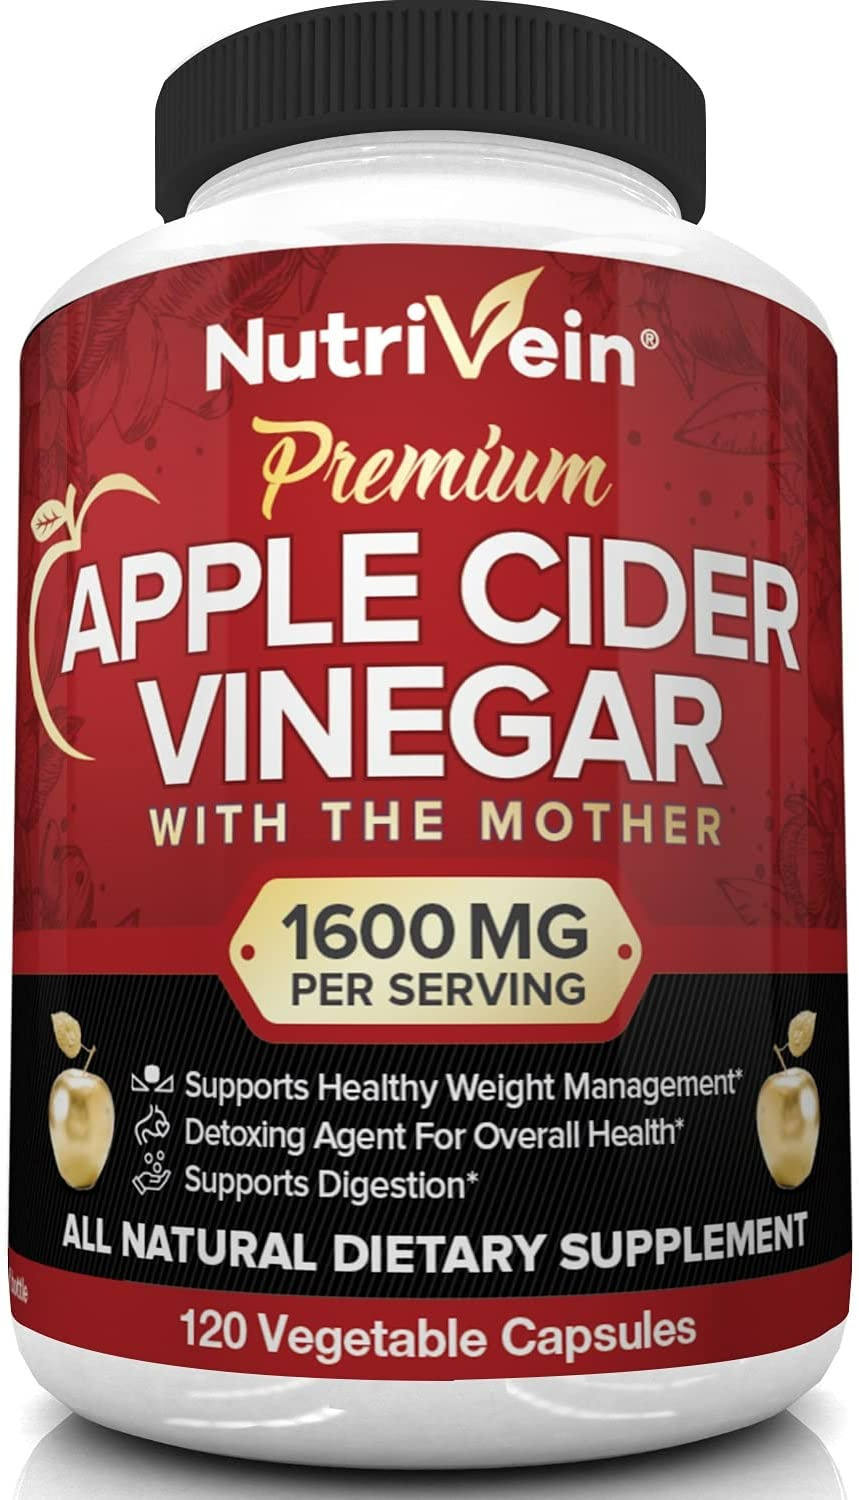 Nutrivein Apple Cider Vinegar Capsules - 120 Capsules